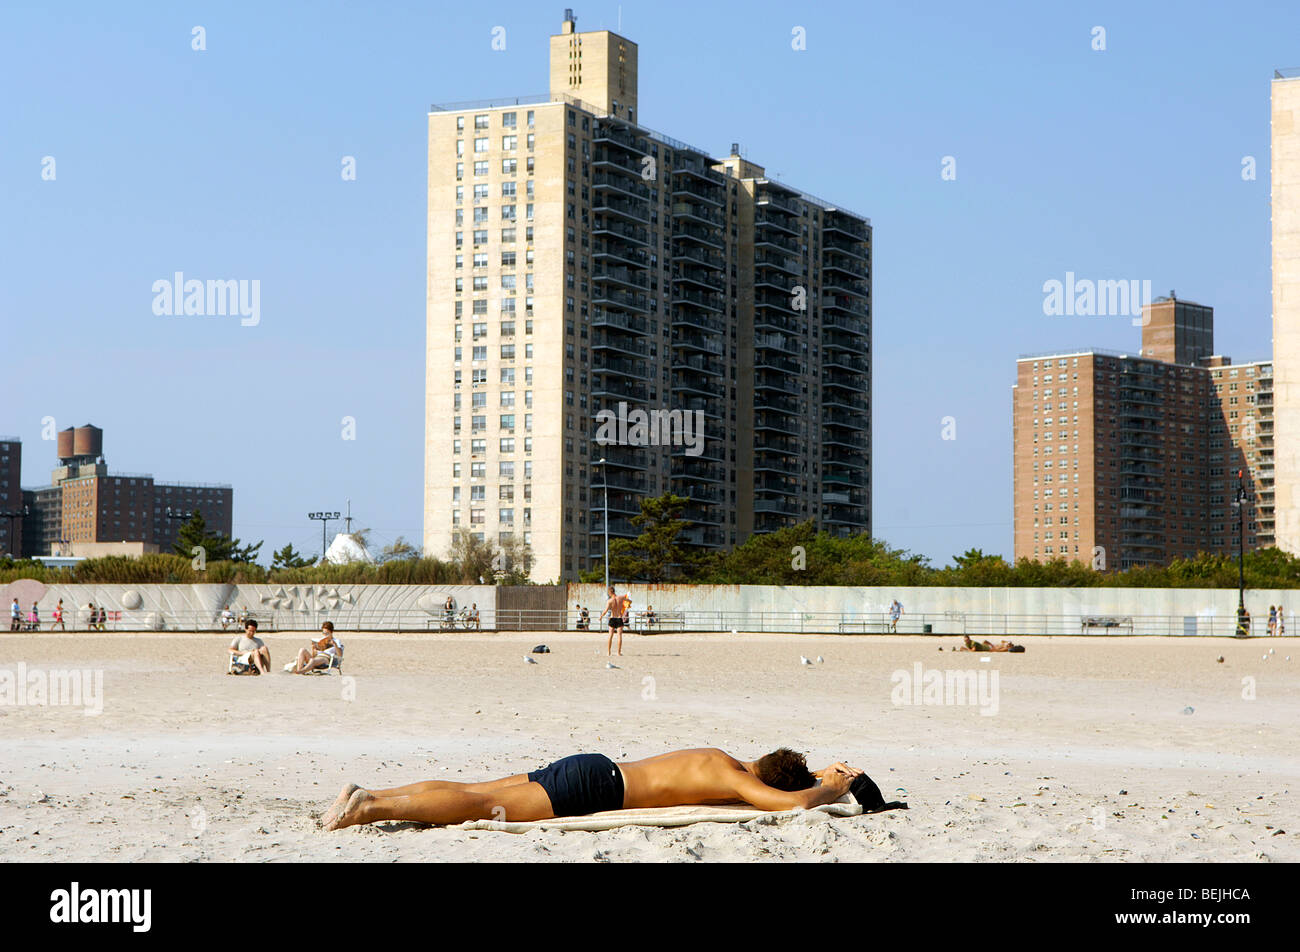 Ein Mann schläft auf den Sand am Strand von Coney Island, Brooklyn, New York. Hochhaus-Wohnprojekte sind im Hintergrund abgebildet. Stockfoto